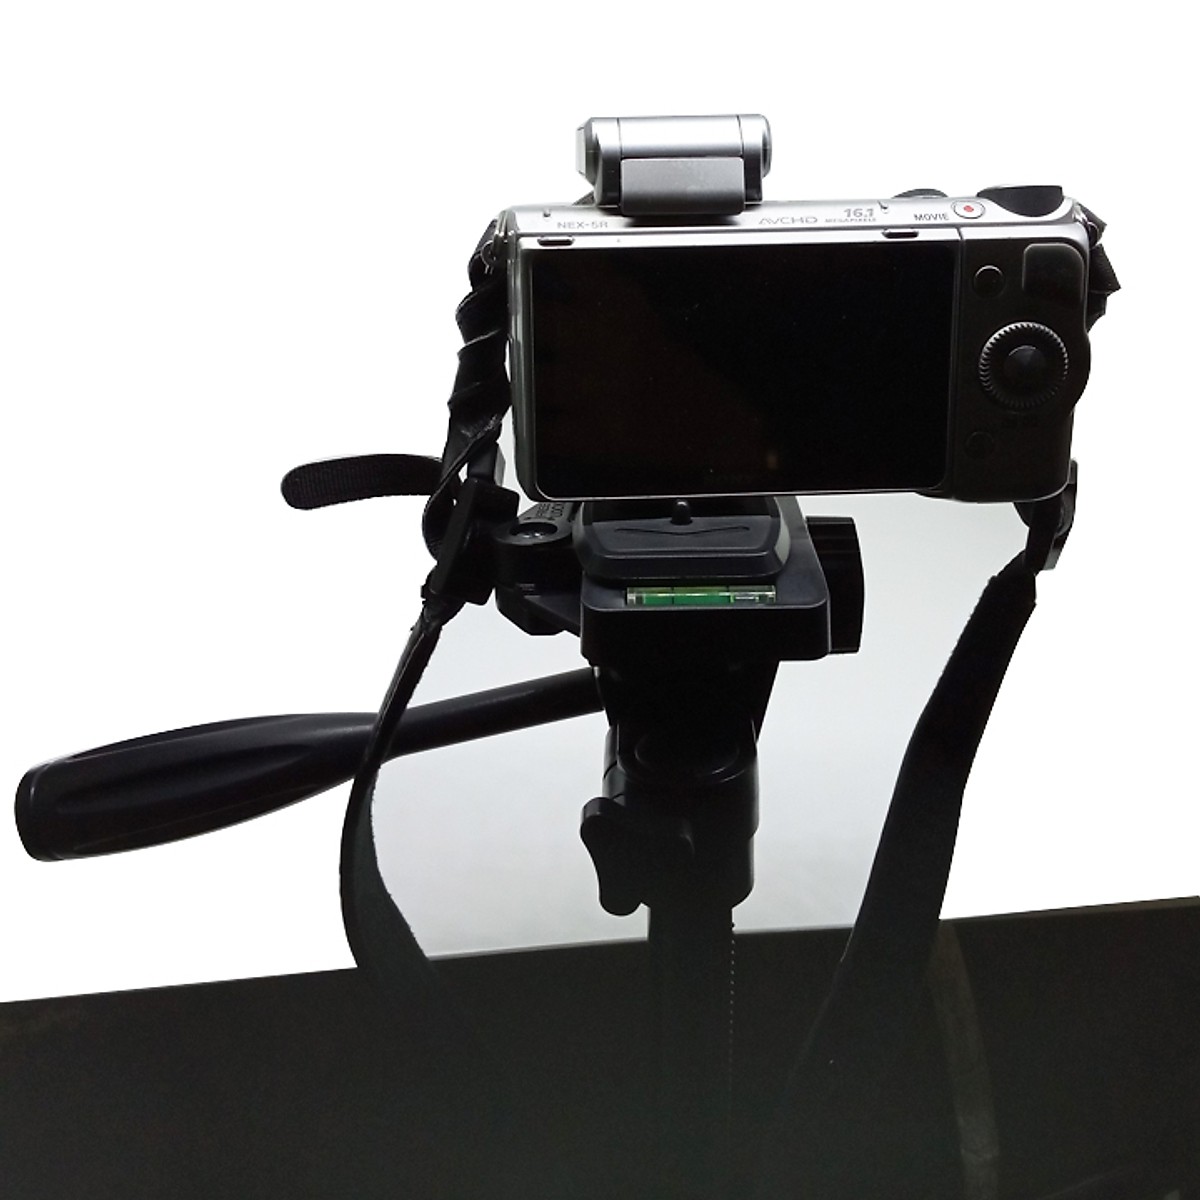 [Tripod] Chân đế điện thoại và máy ảnh Selfiecom 3366 có remote Bluetooth ( Giao màu ngẫu nhiên) - Hàng chính hãng